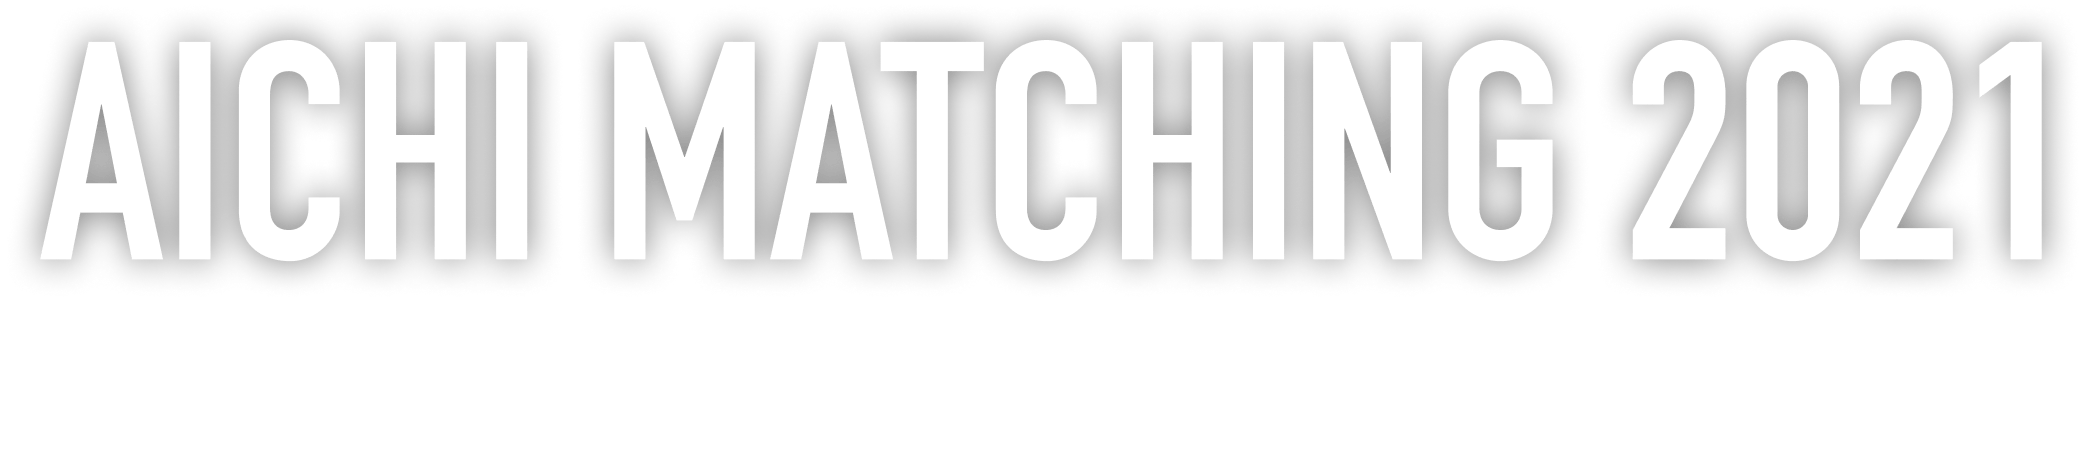 Aichi Matching 2021 Batch 1